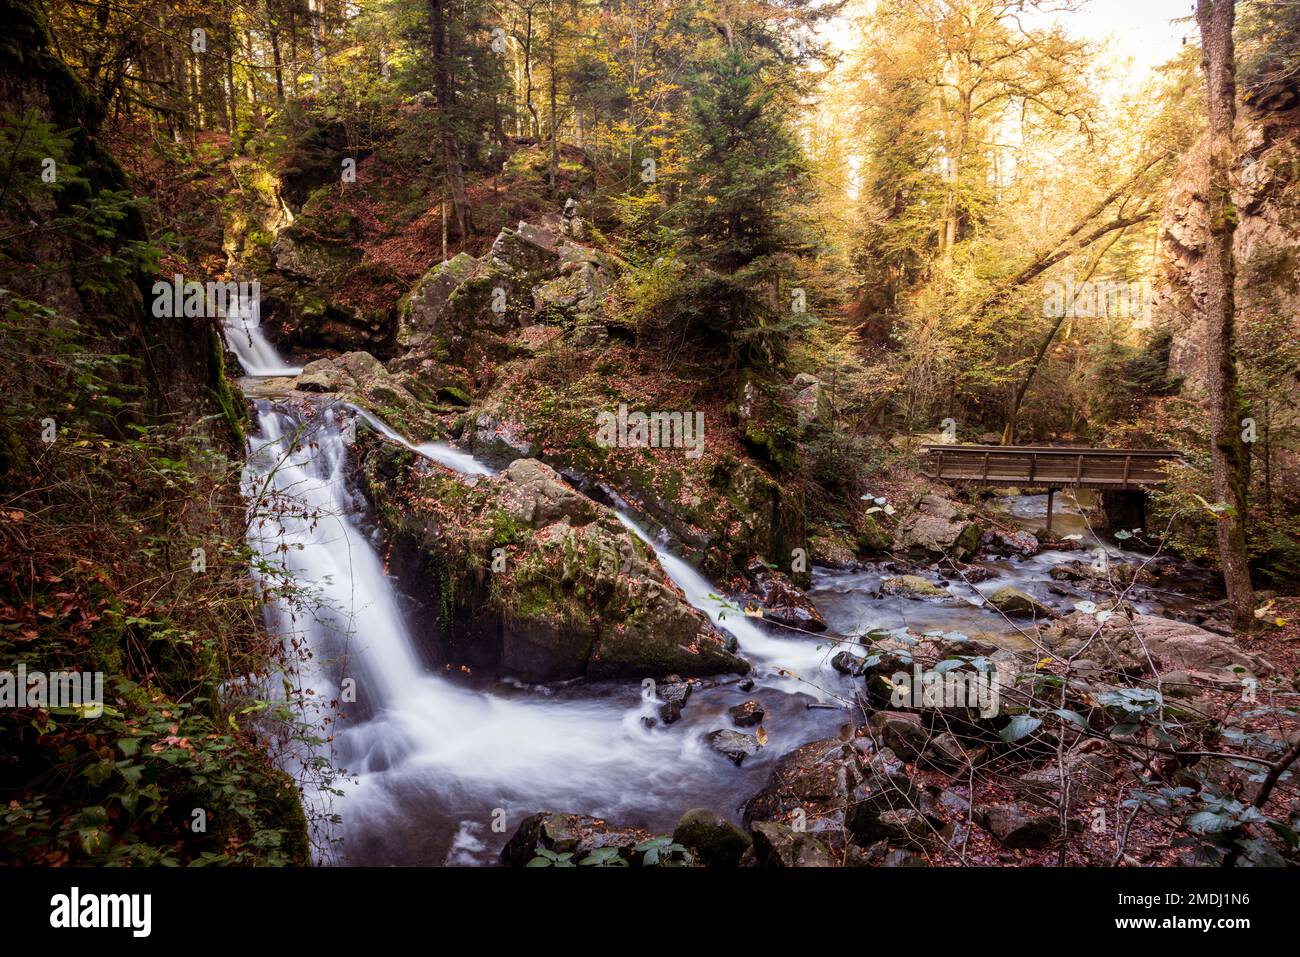 La petite cascade de Tendon, France, Vosges, automne Stock Photo